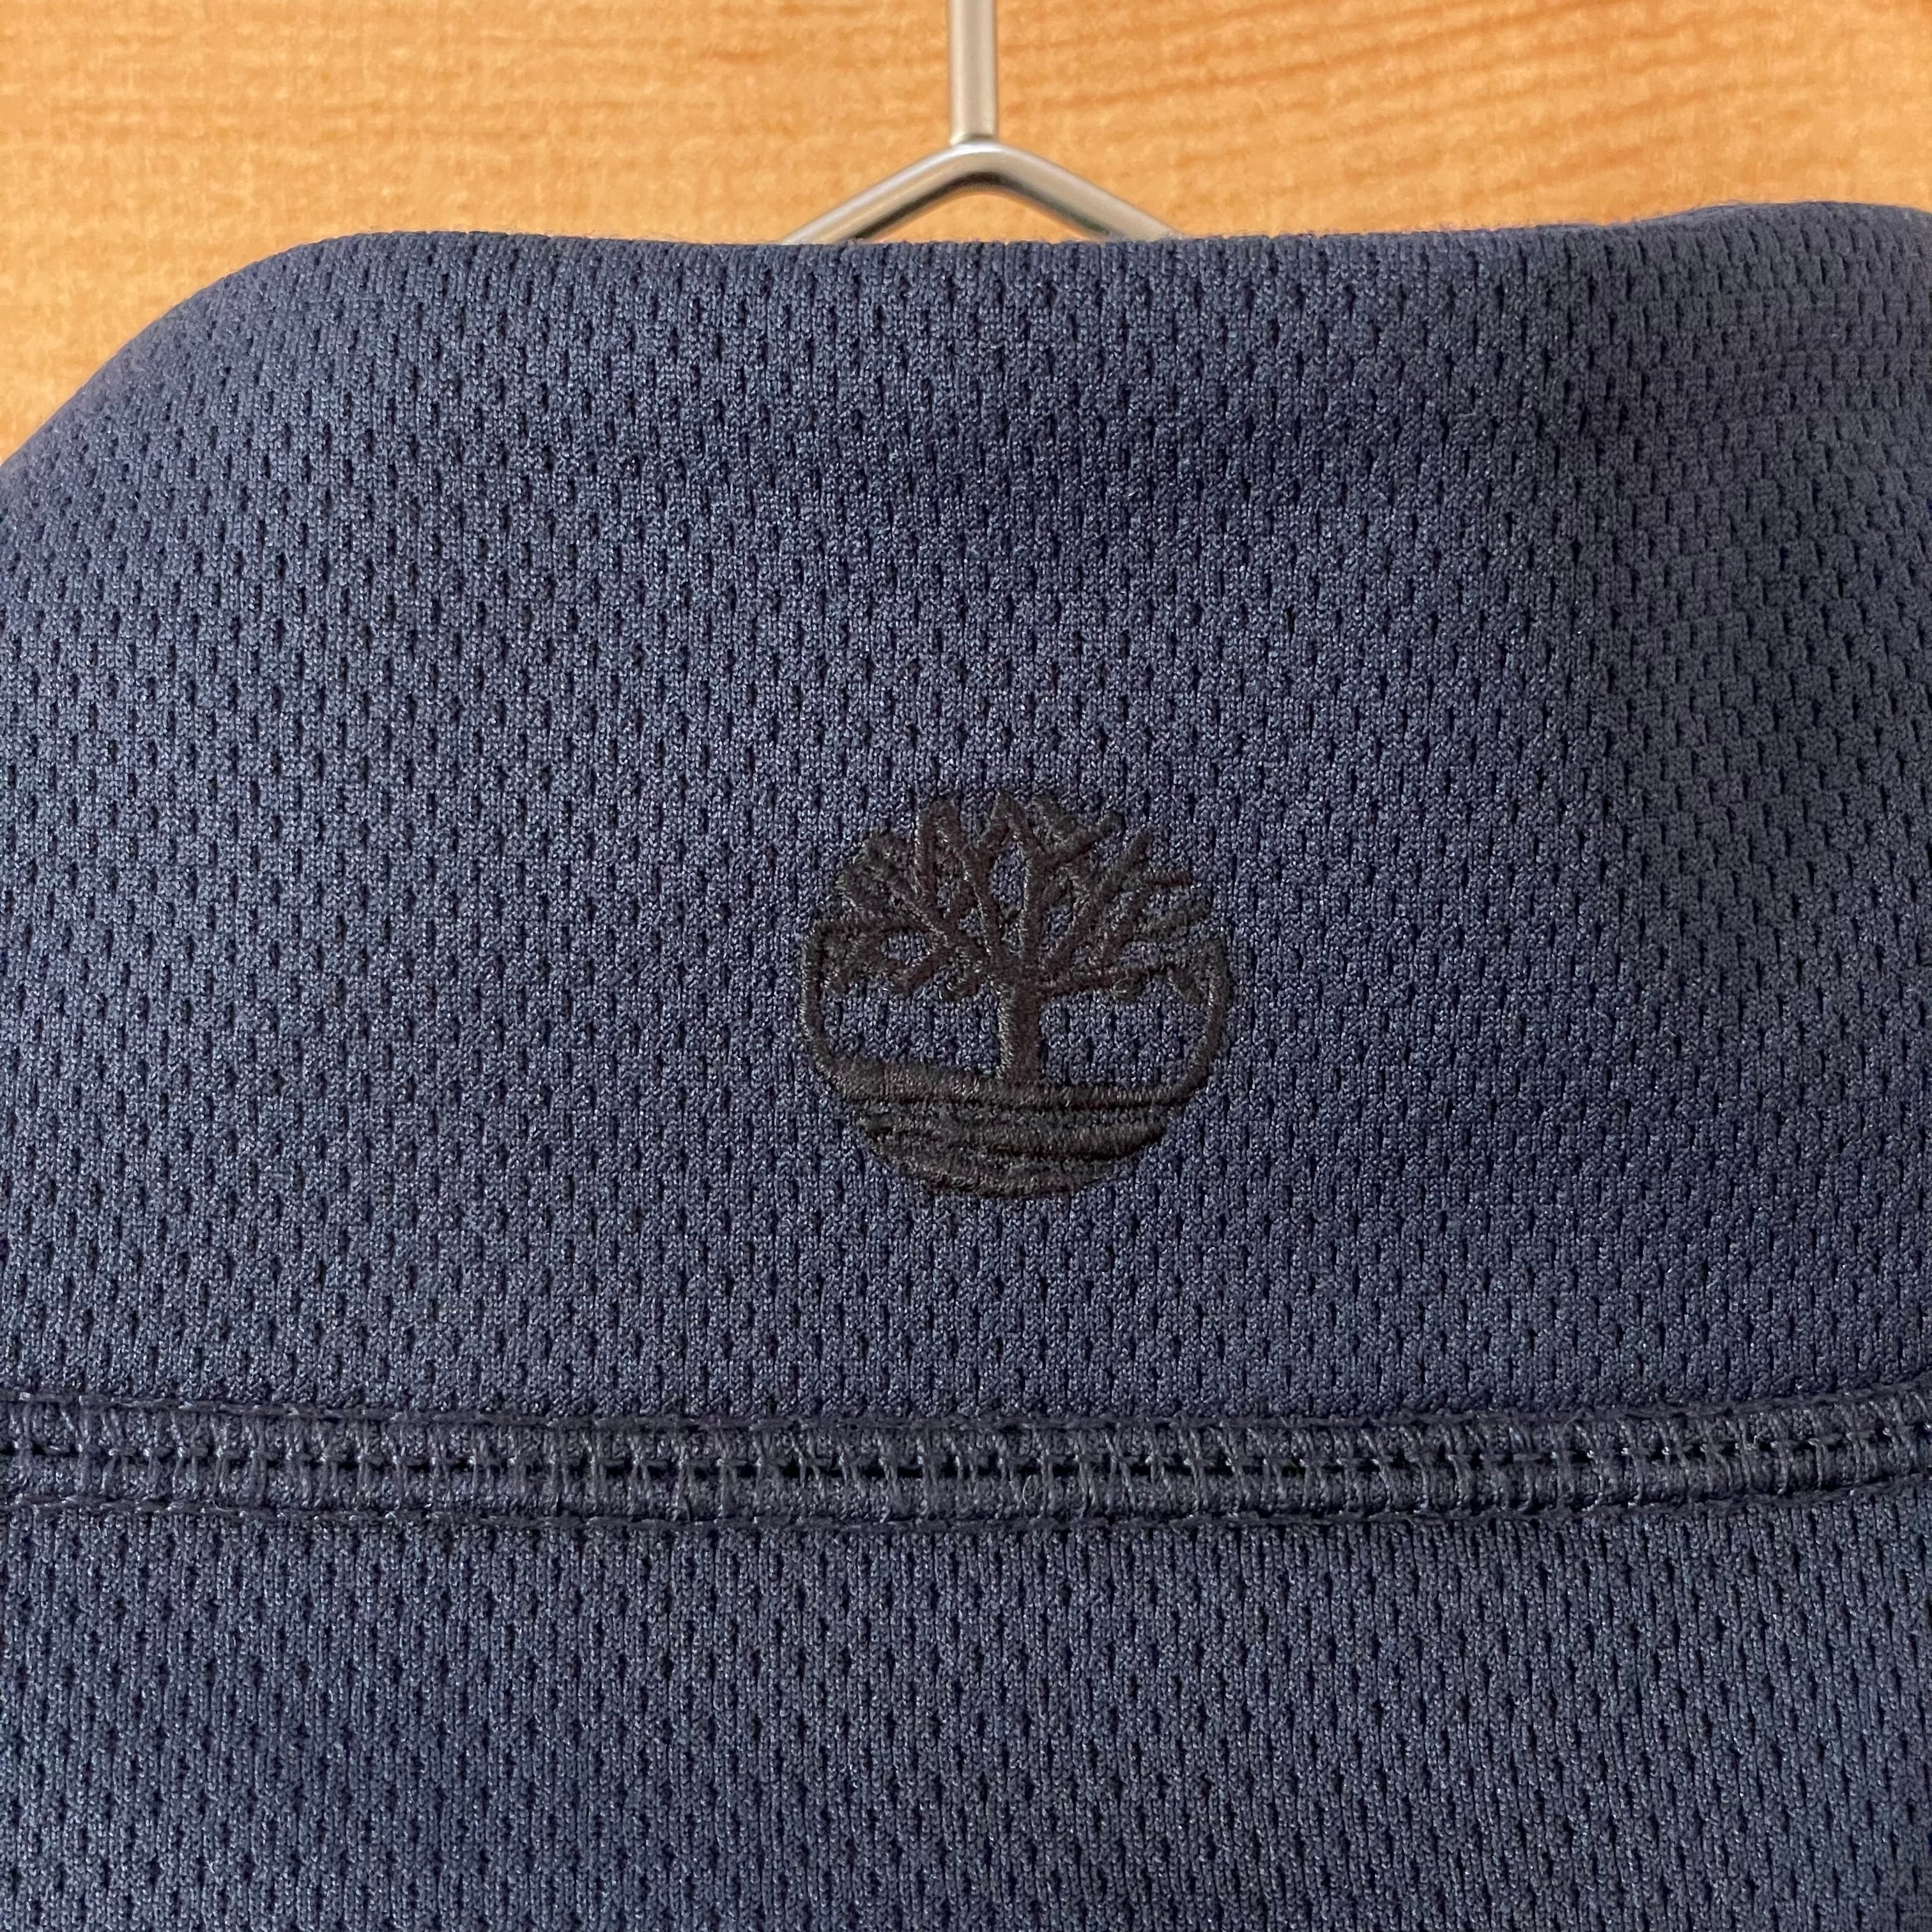 ティンバーランド 刺繍ロゴ ビッグプリント 紺色 L プルオーバー パーカー